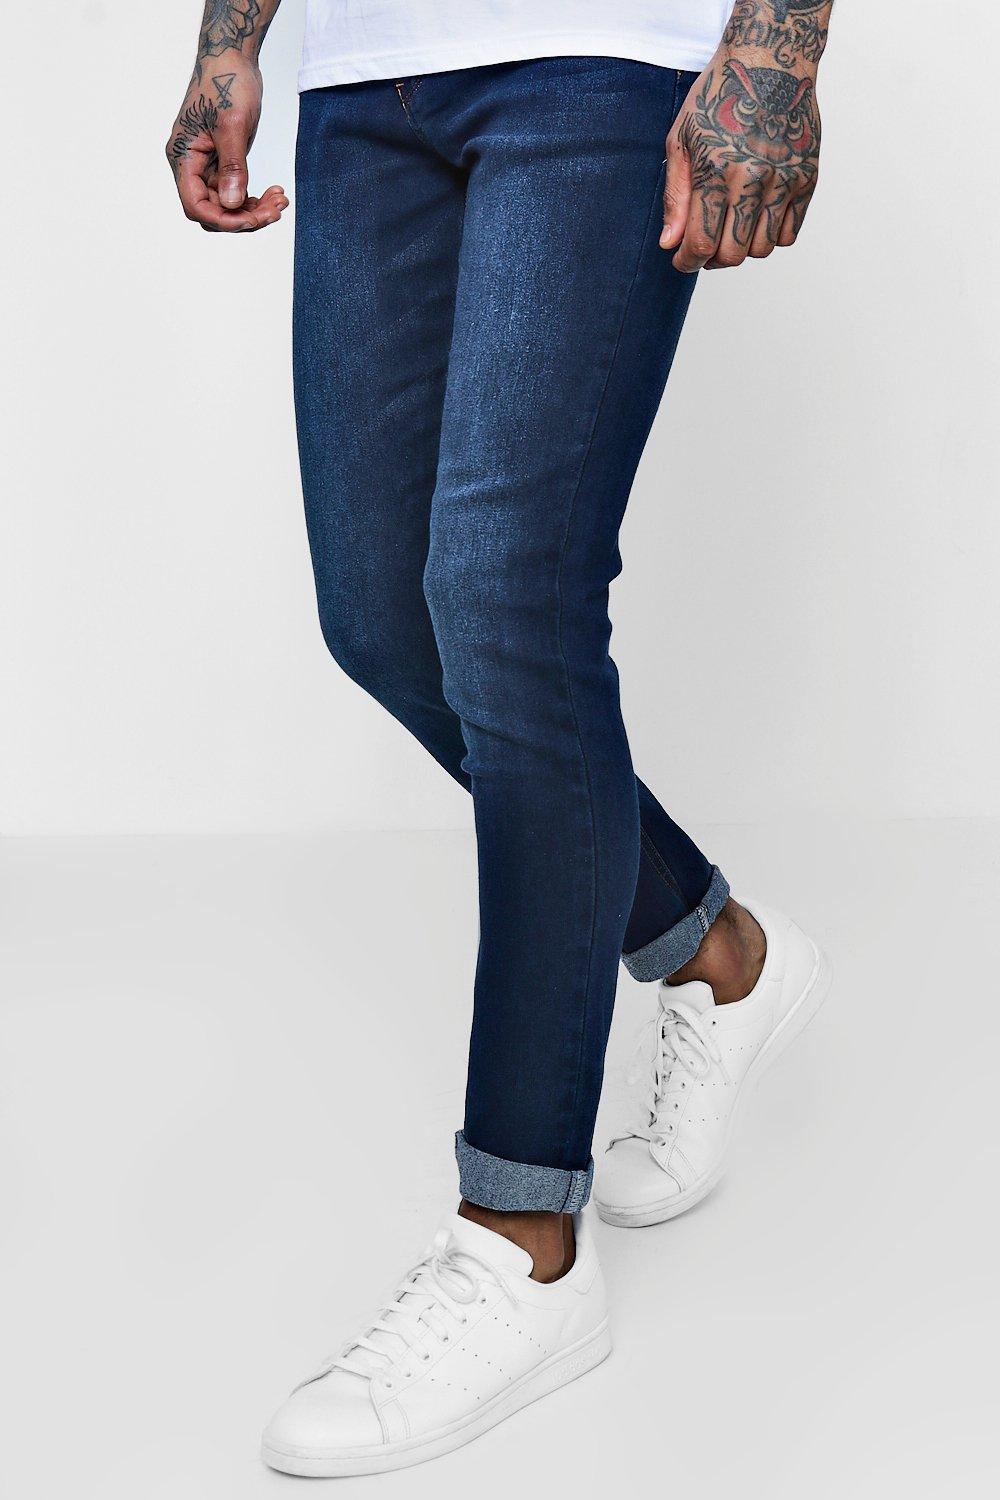 jeans indigo